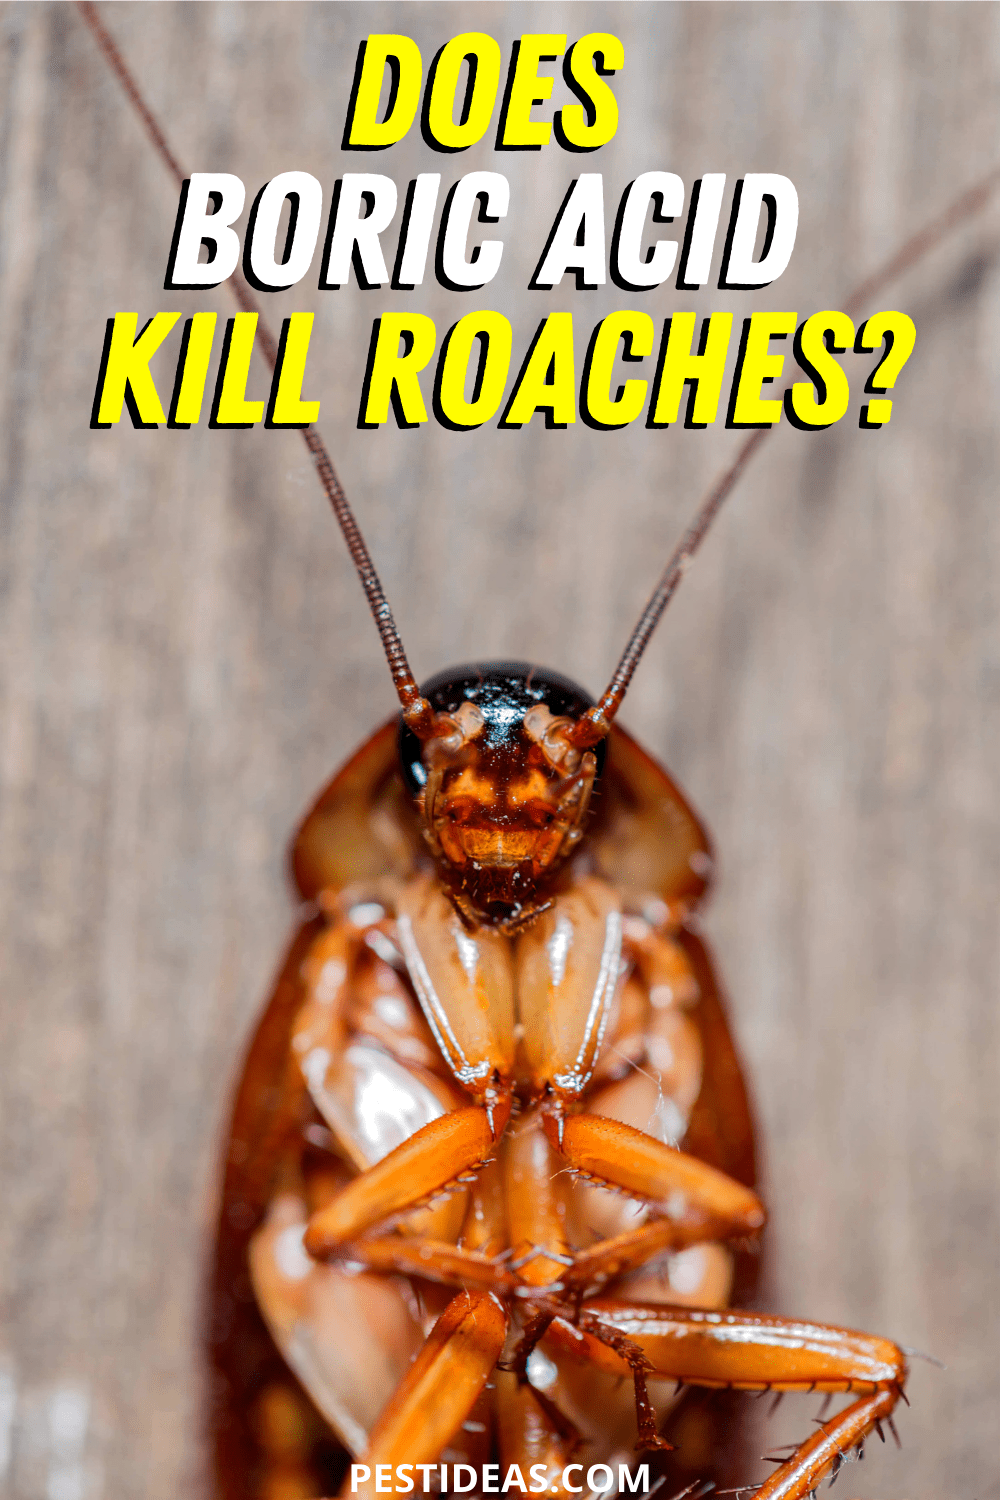 Does Boric Acid Kill Roaches?